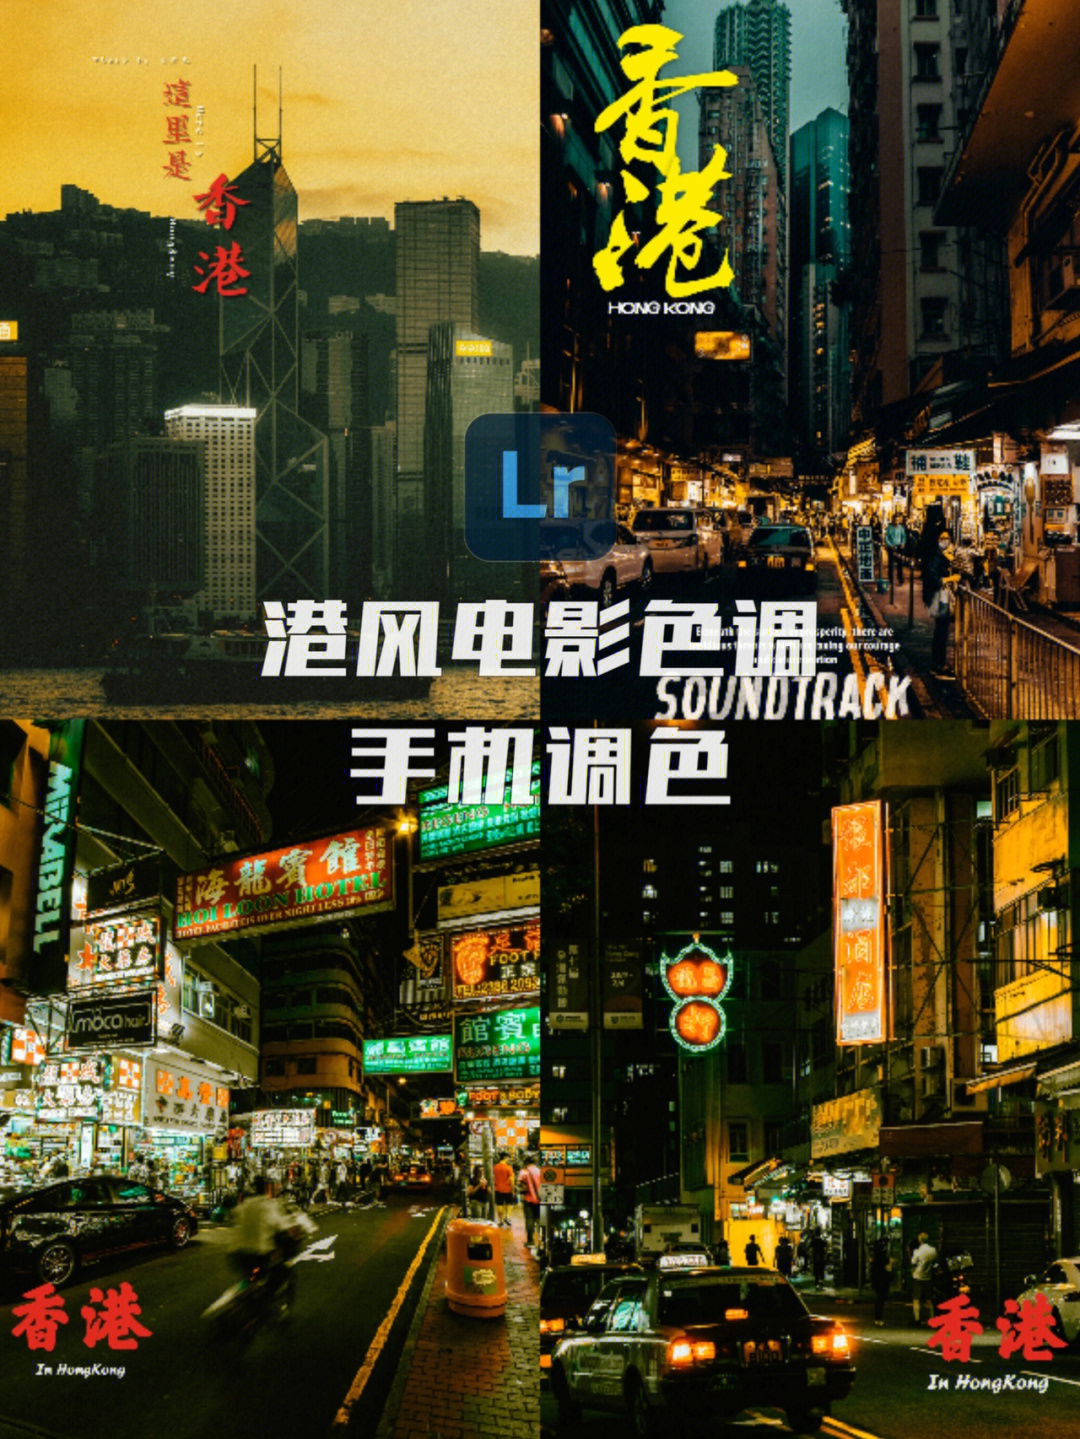 今天带来一款香港电影色调,用在街拍城市等照片上面立马获得电影质感